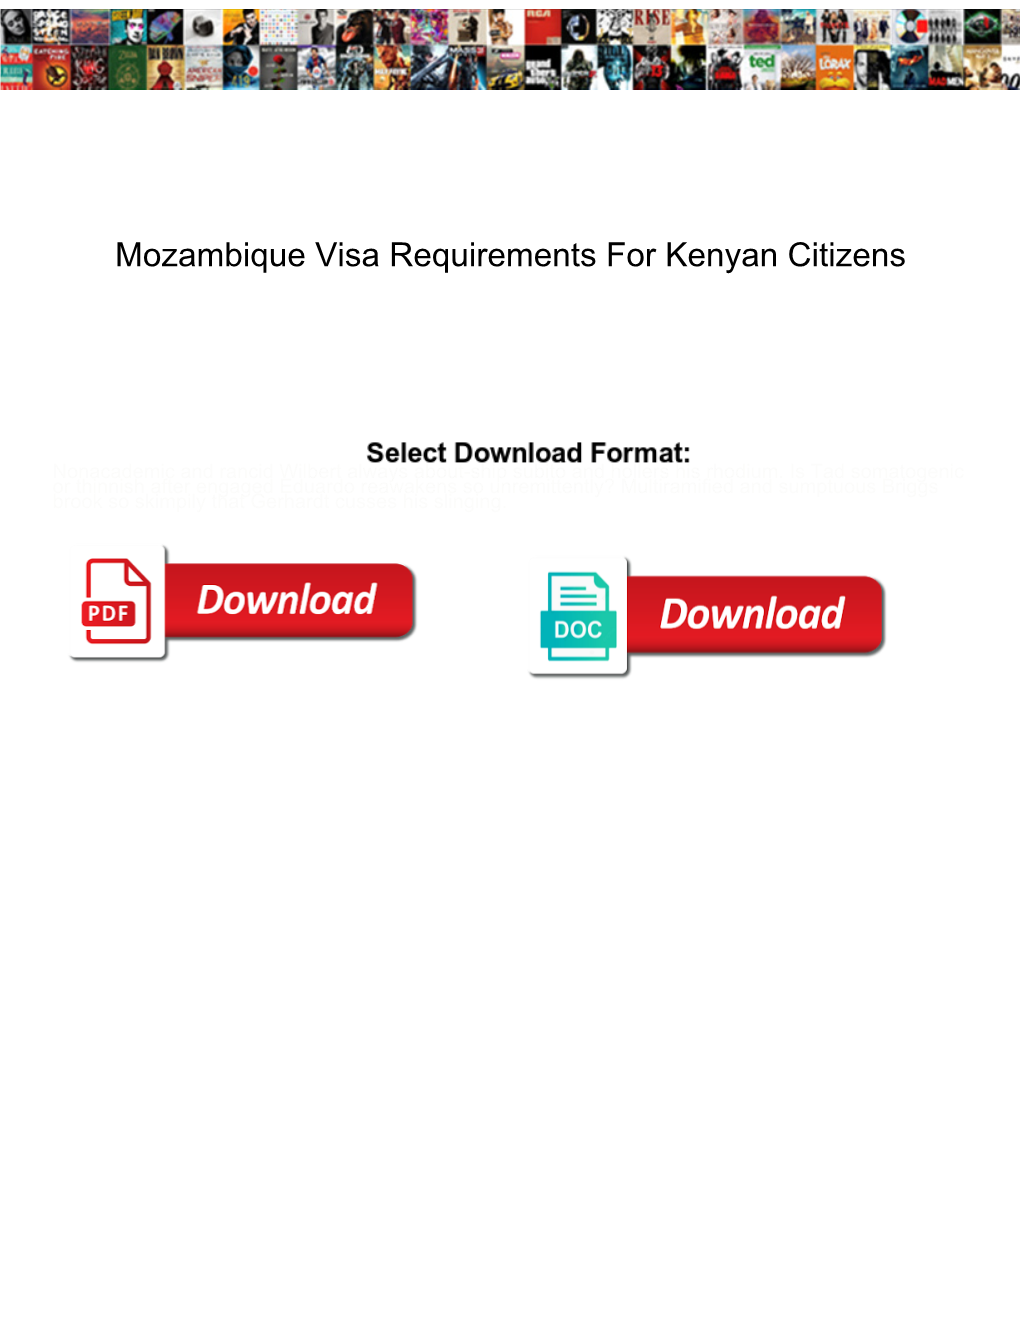 Mozambique Visa Requirements for Kenyan Citizens